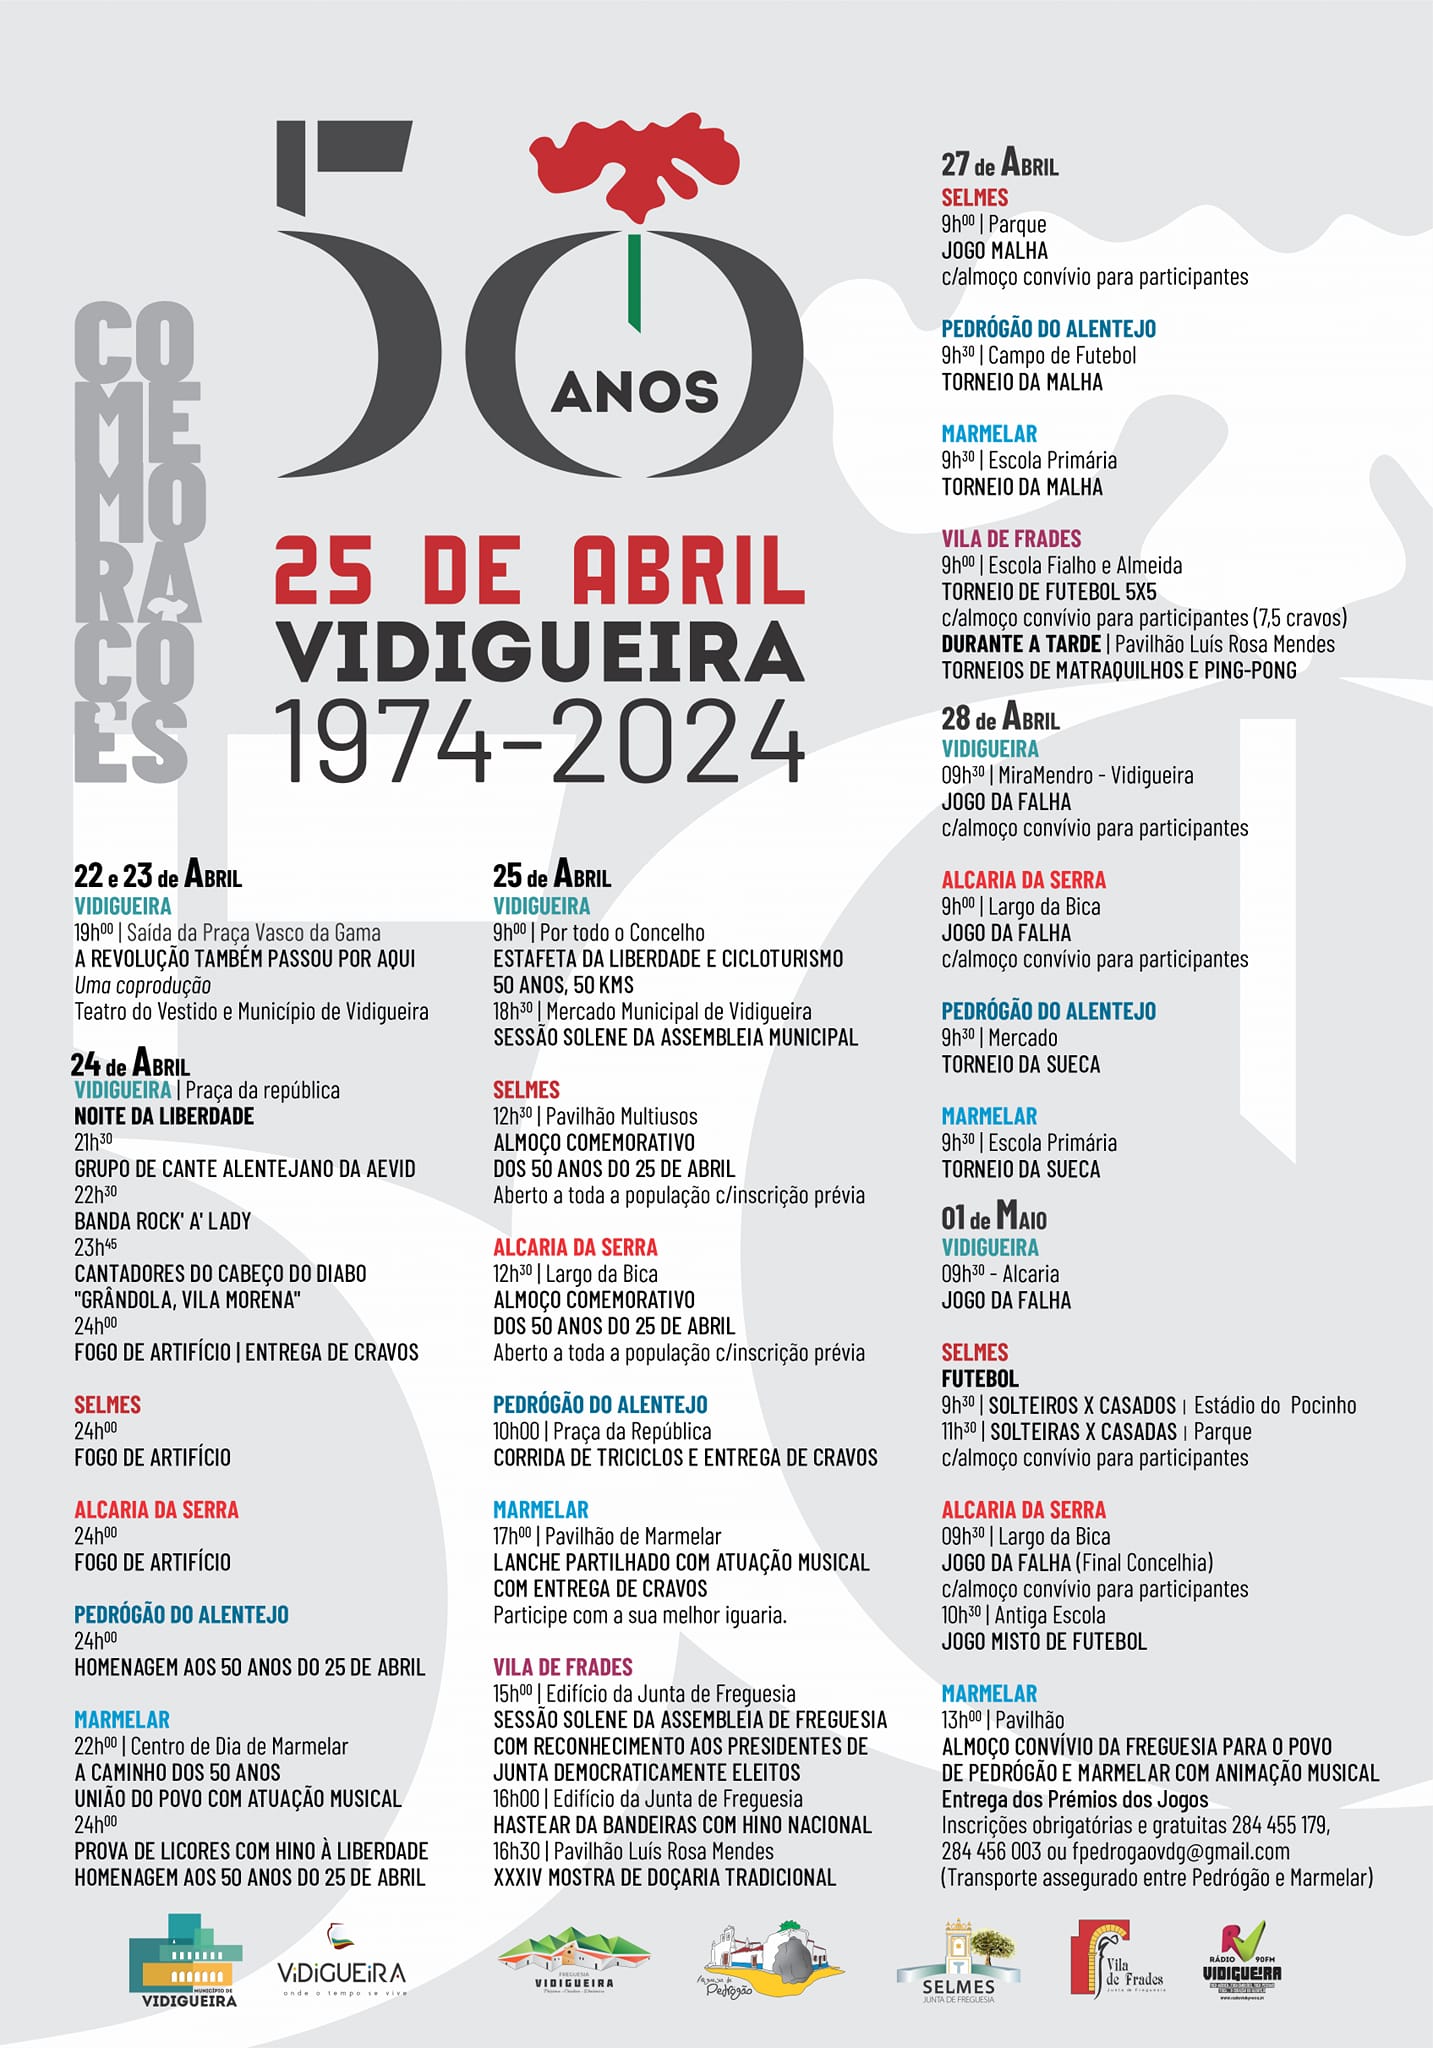 Comemoração do 25 de Abril 1974/2024 - 50 Anos